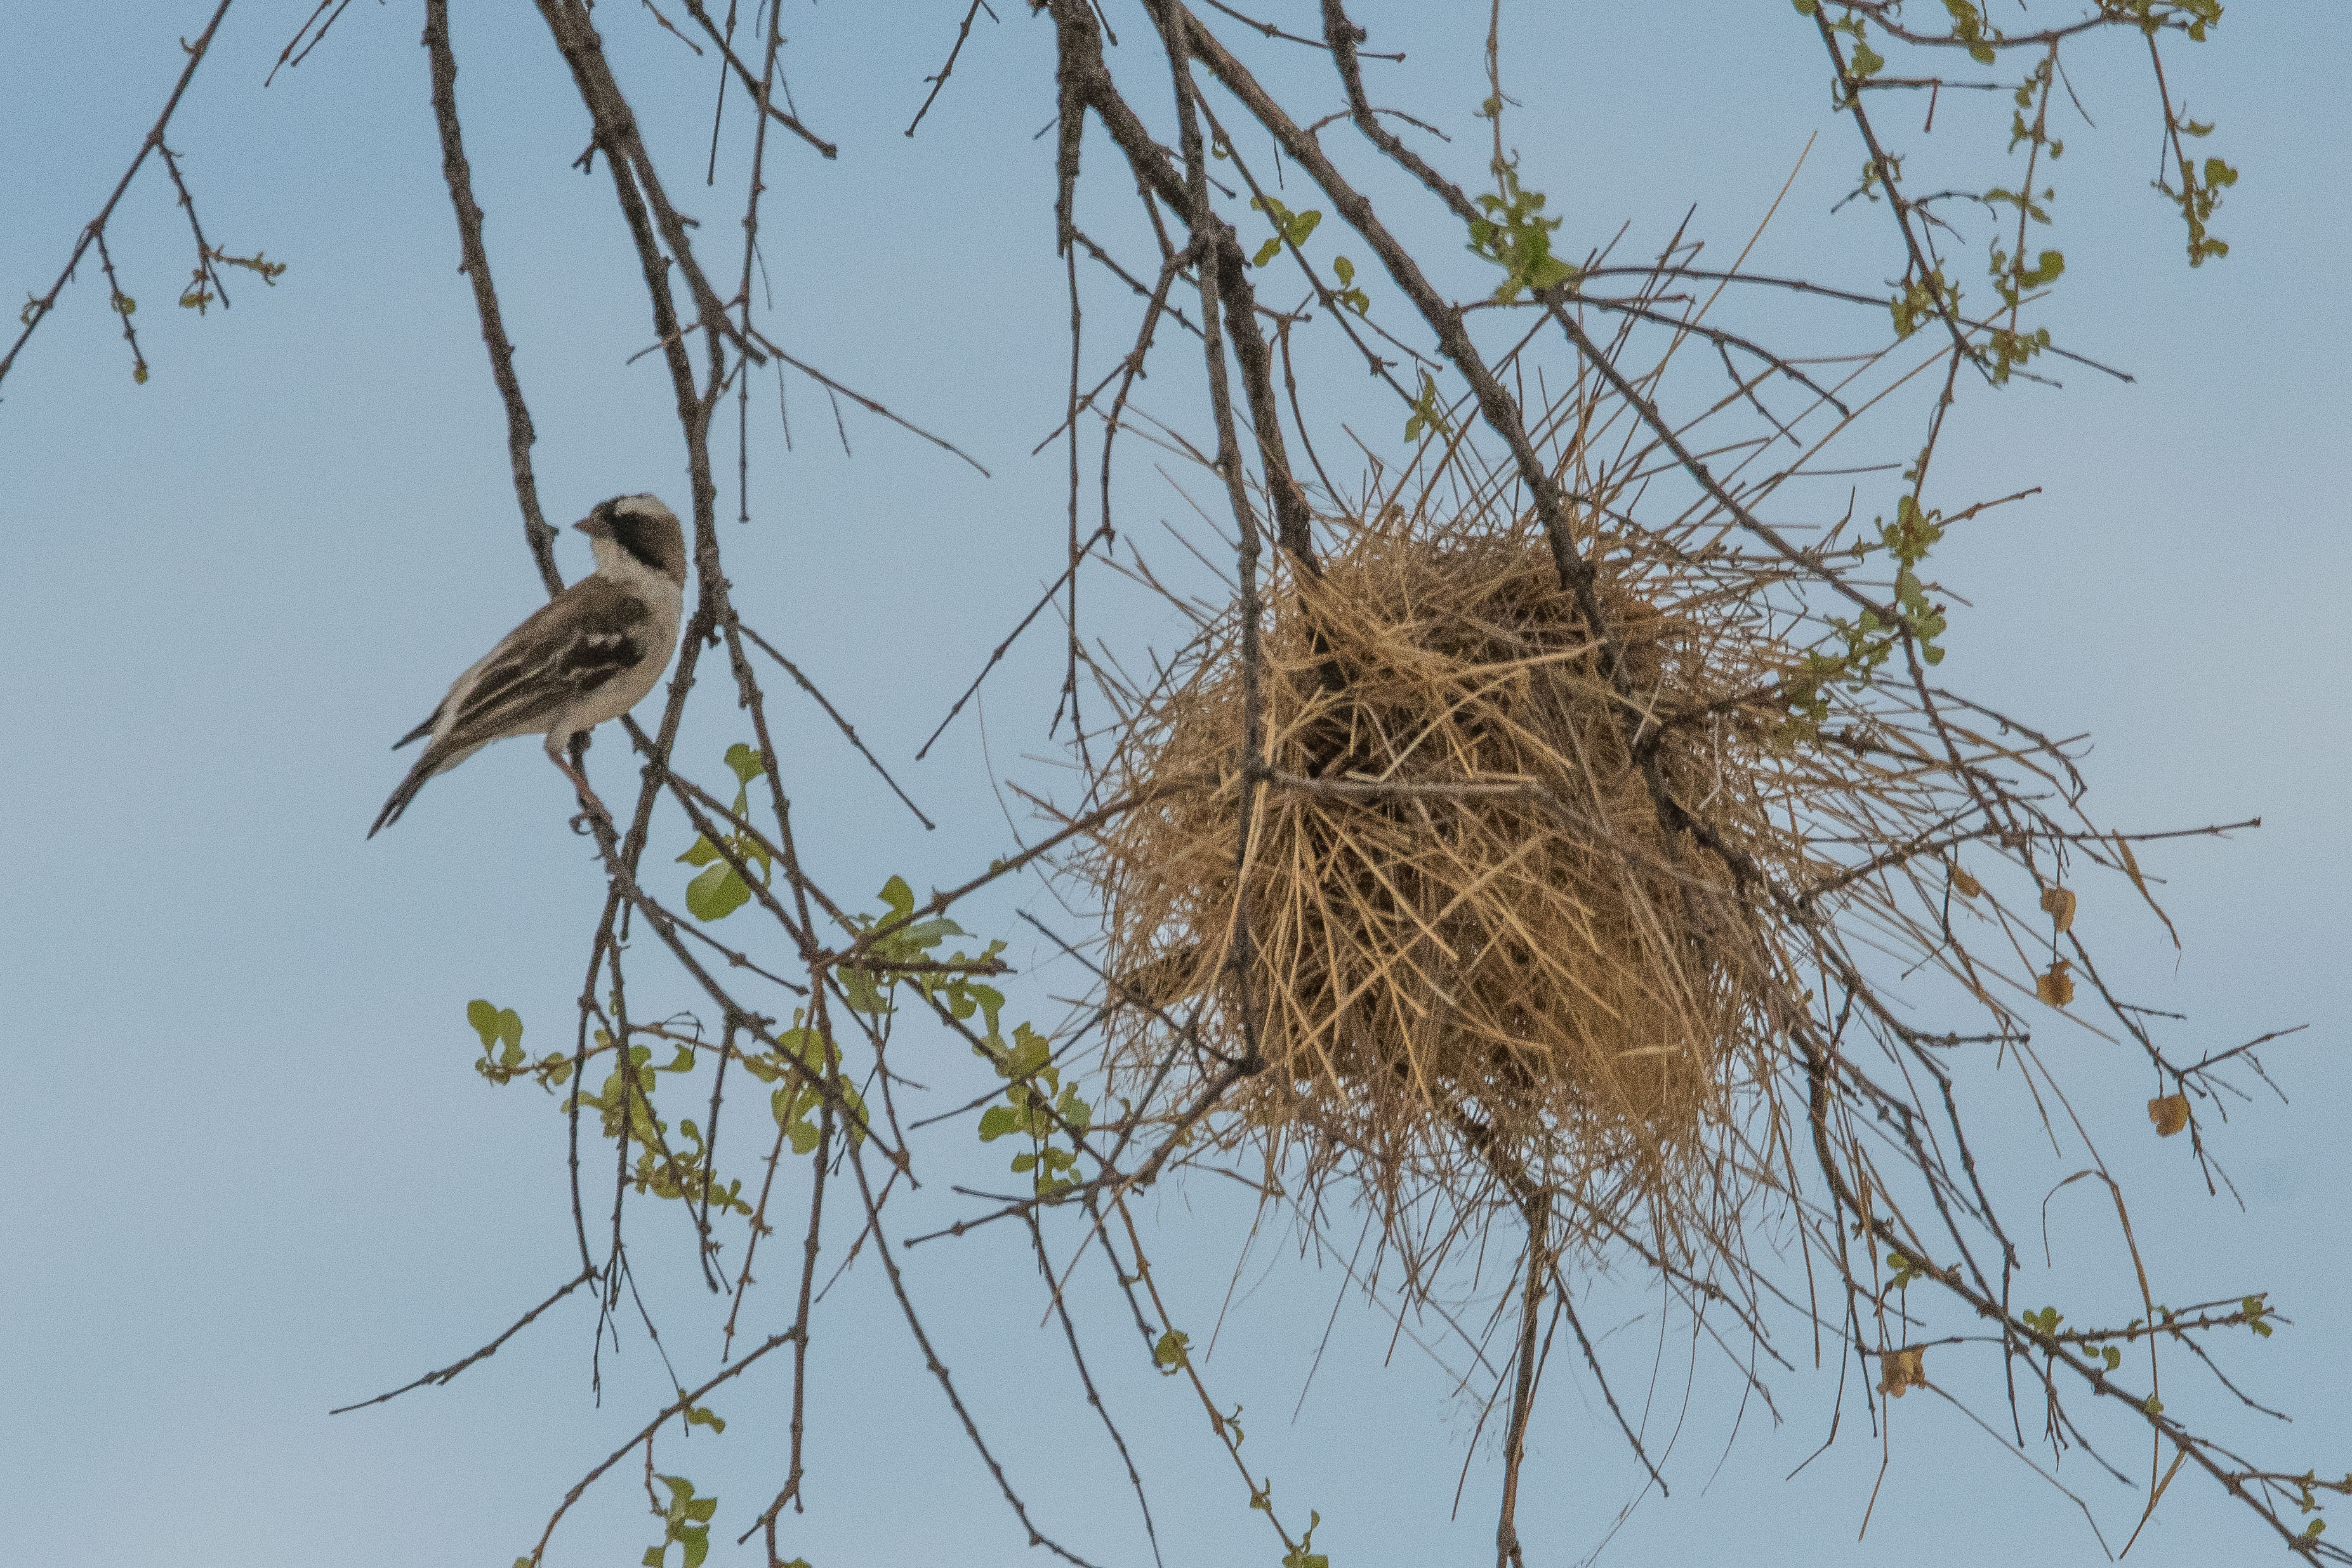 Mahali à sourcils blancs (White-browed sparrow weaver, Plocepasser mahali), adulte prés de son nid, Kwando reserve, Delta de l'Okavango, Botswana.